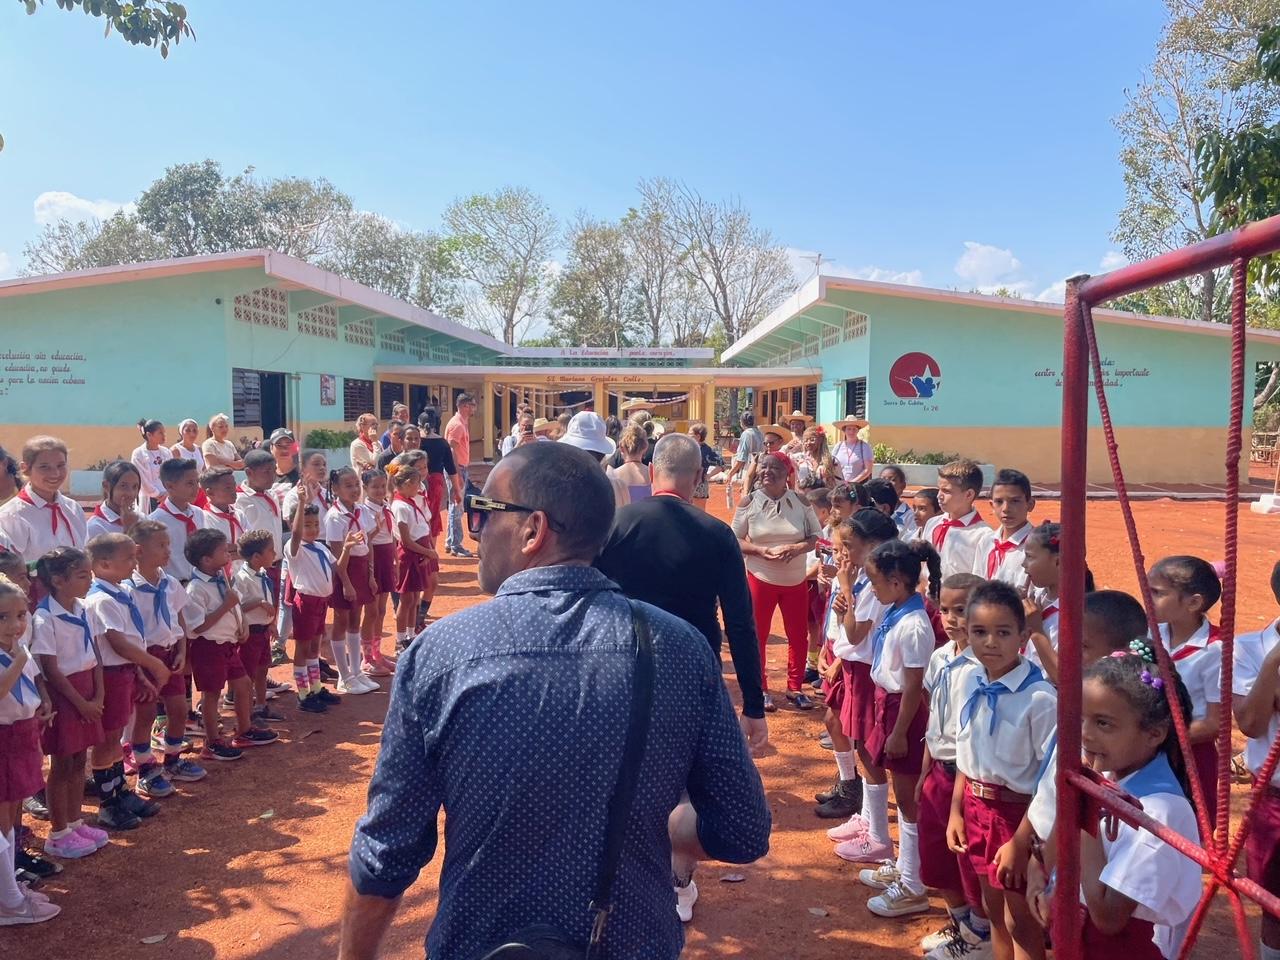 UMD Scholars visit a school in Cuba